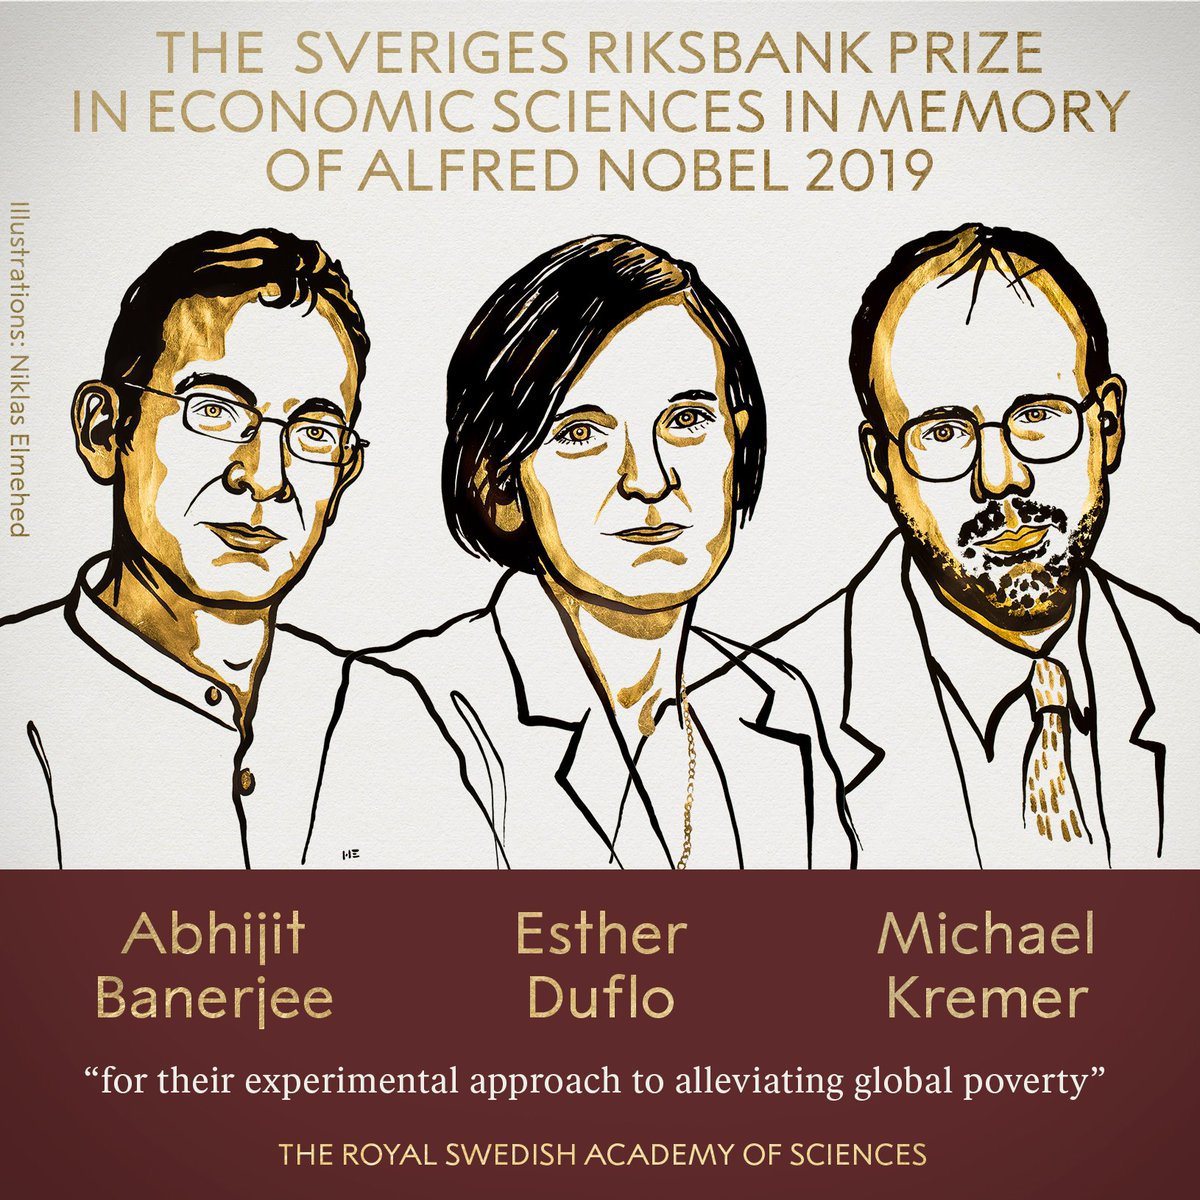 諾貝爾經濟學獎由三人共得。圖╱諾貝爾獎官方推特